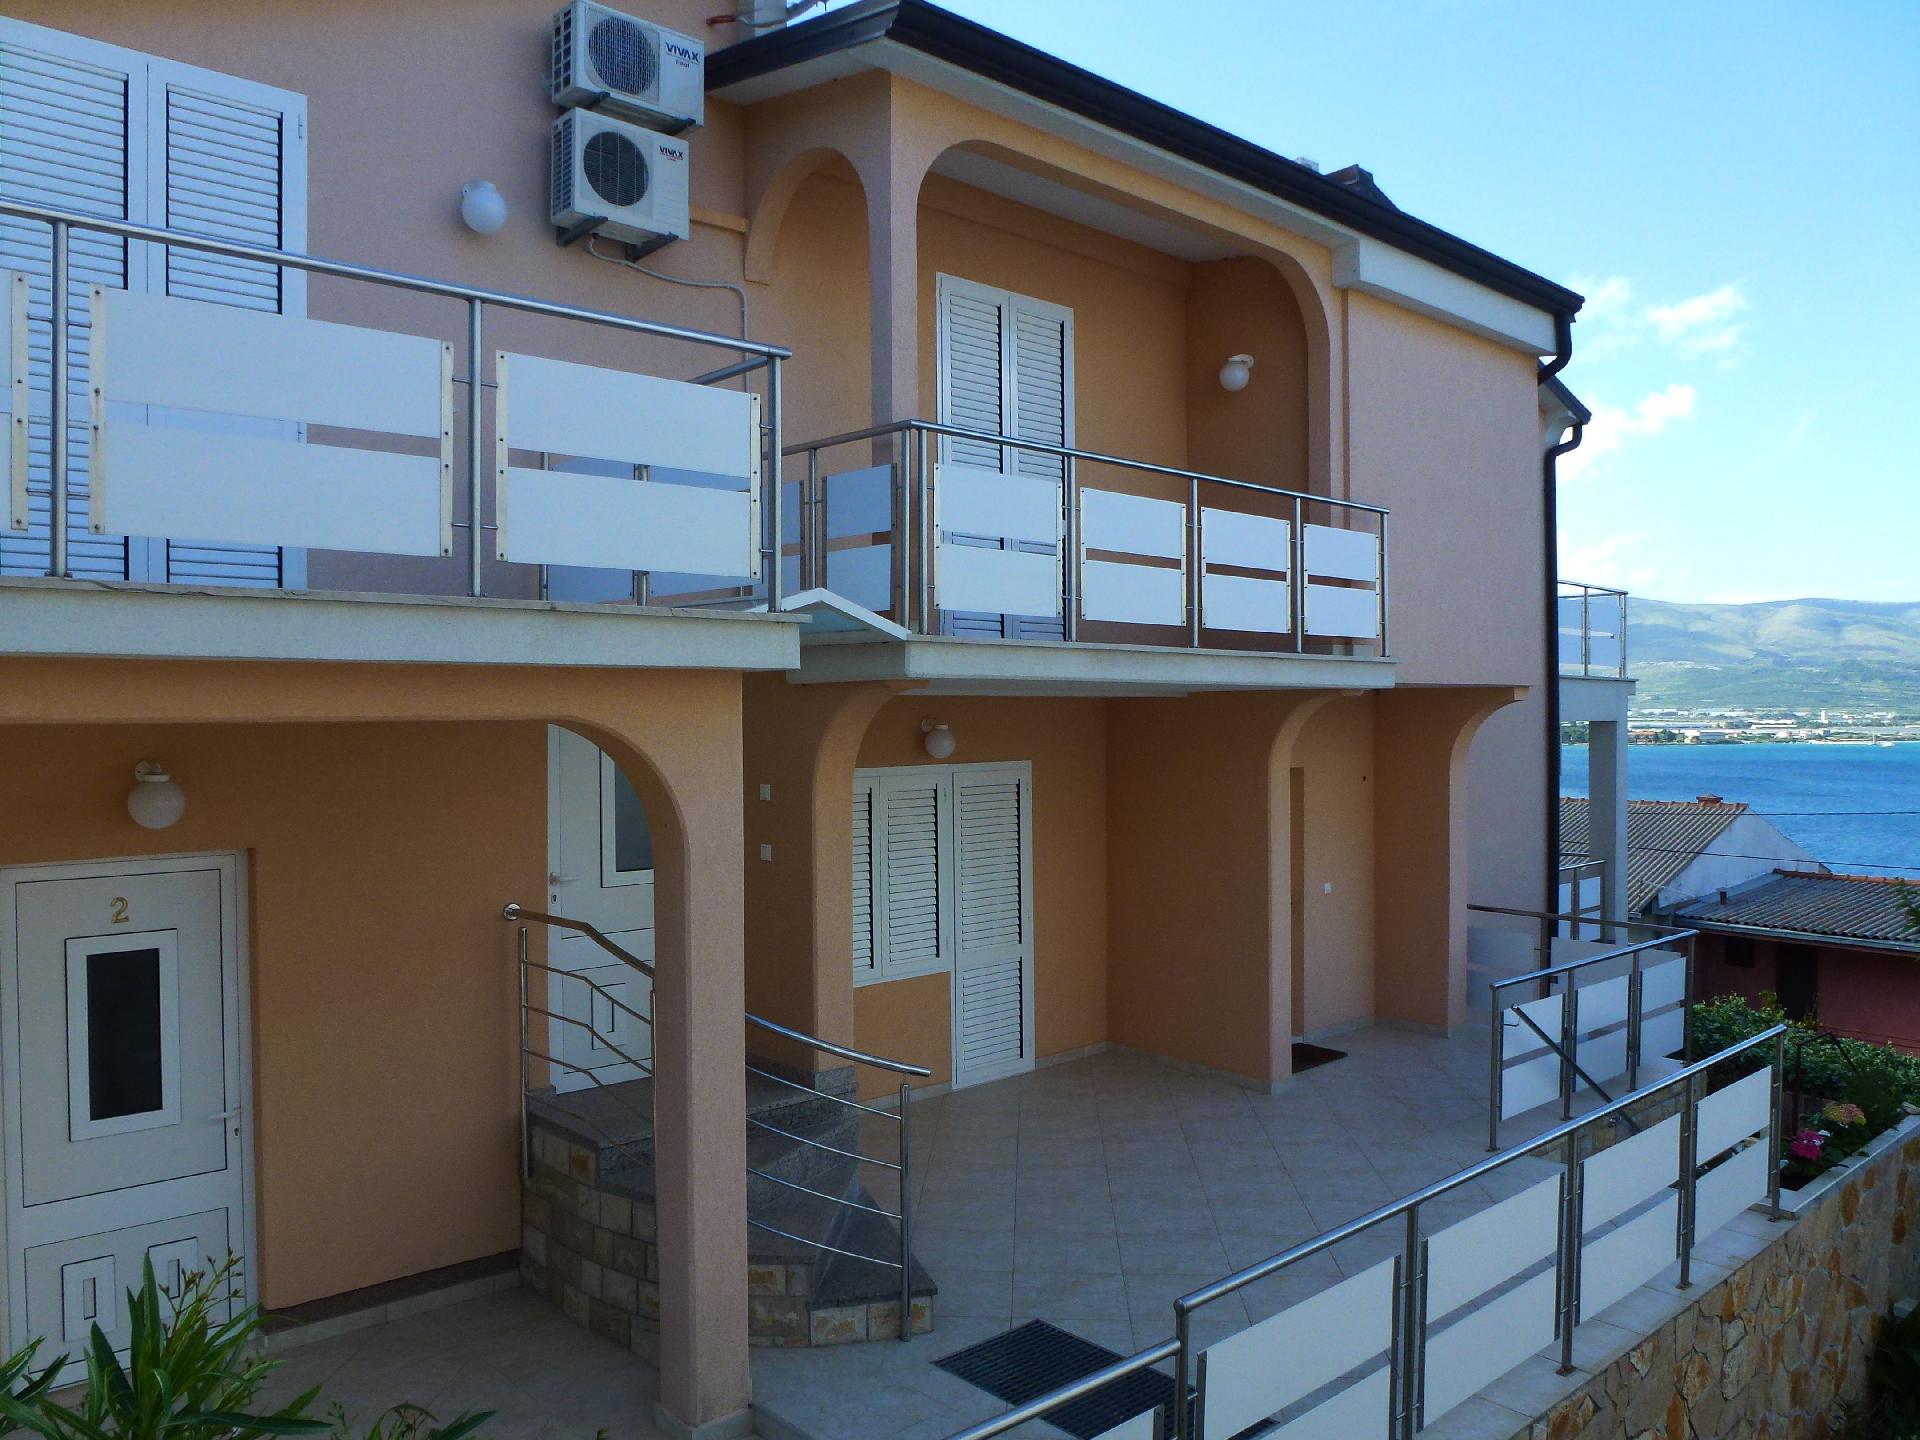 Helle Zimmer mit grossem Balkon mit Meeresblick f& Ferienhaus in Kroatien